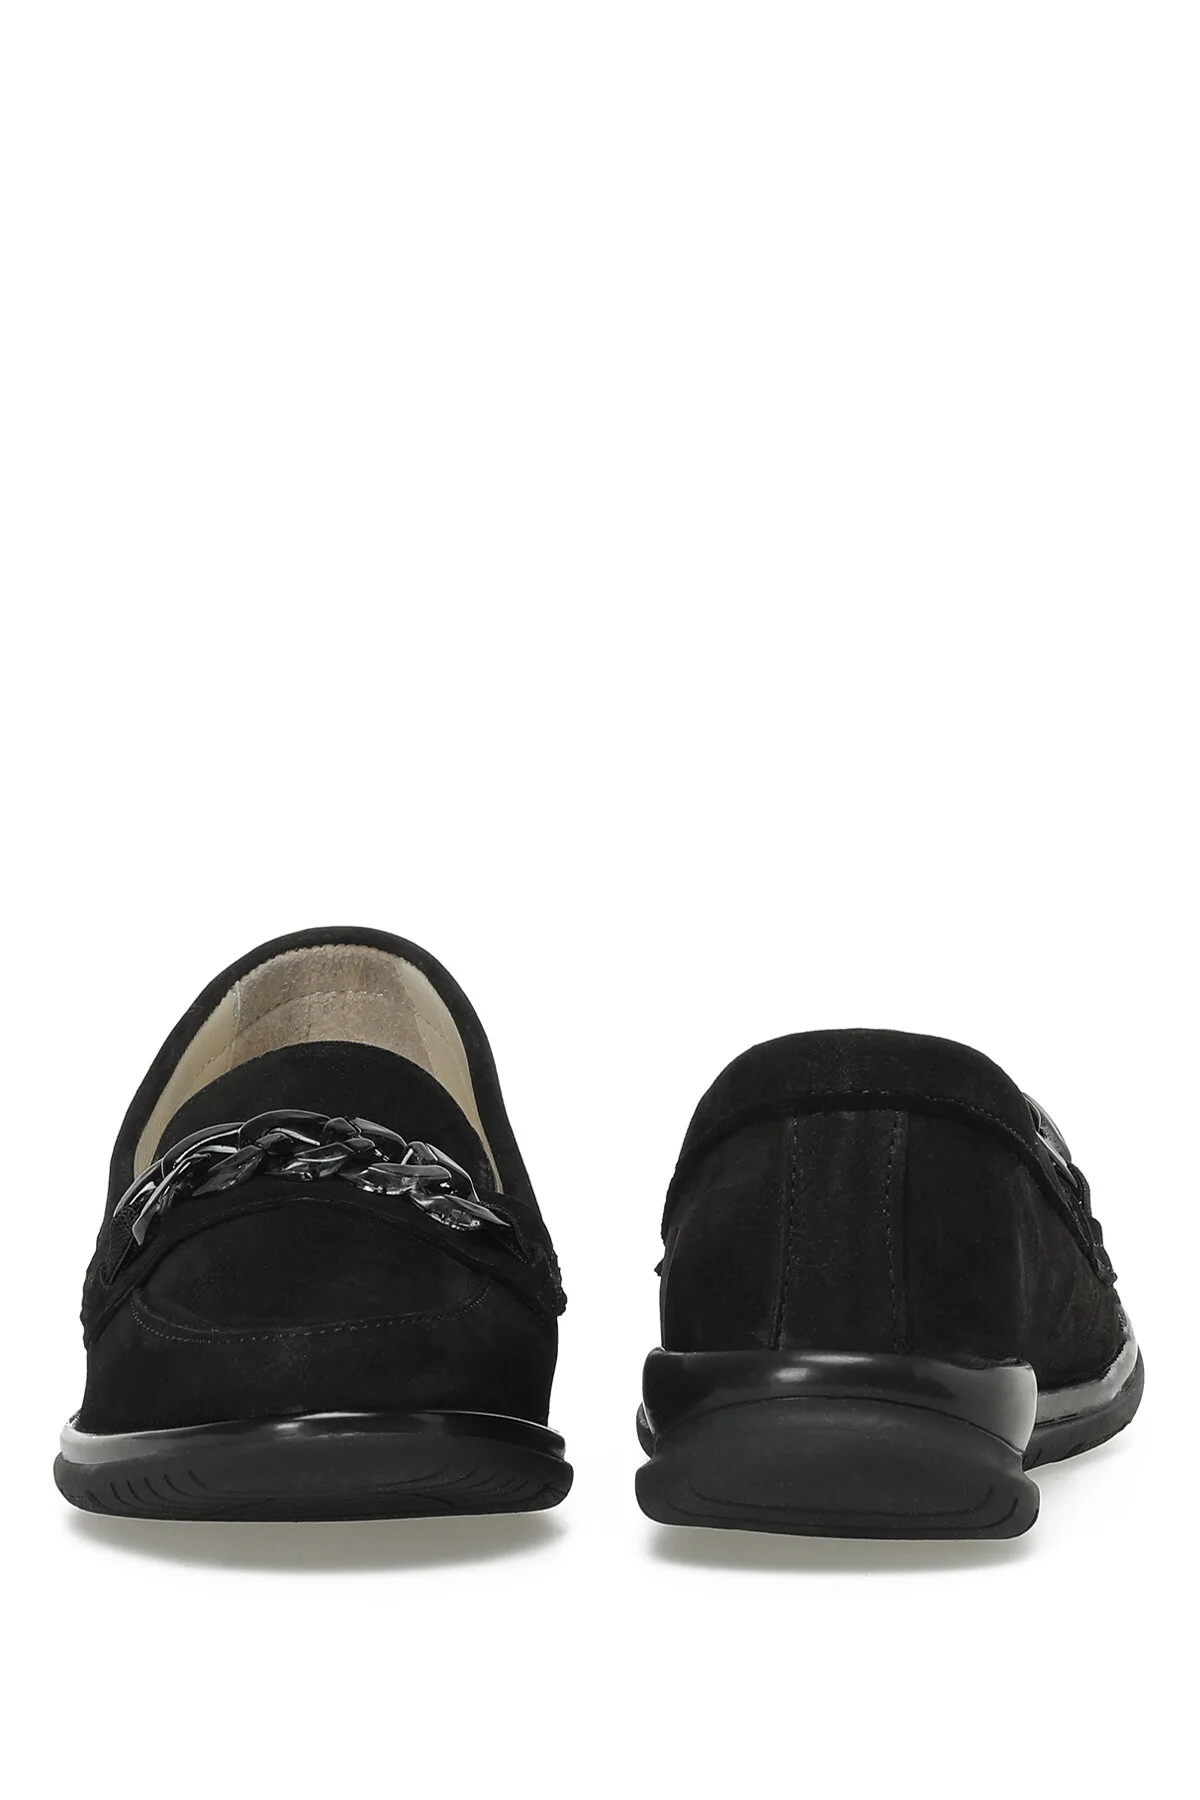 LIDO 3FX Kadın Loafer Düz Ayakkabı-Siyah